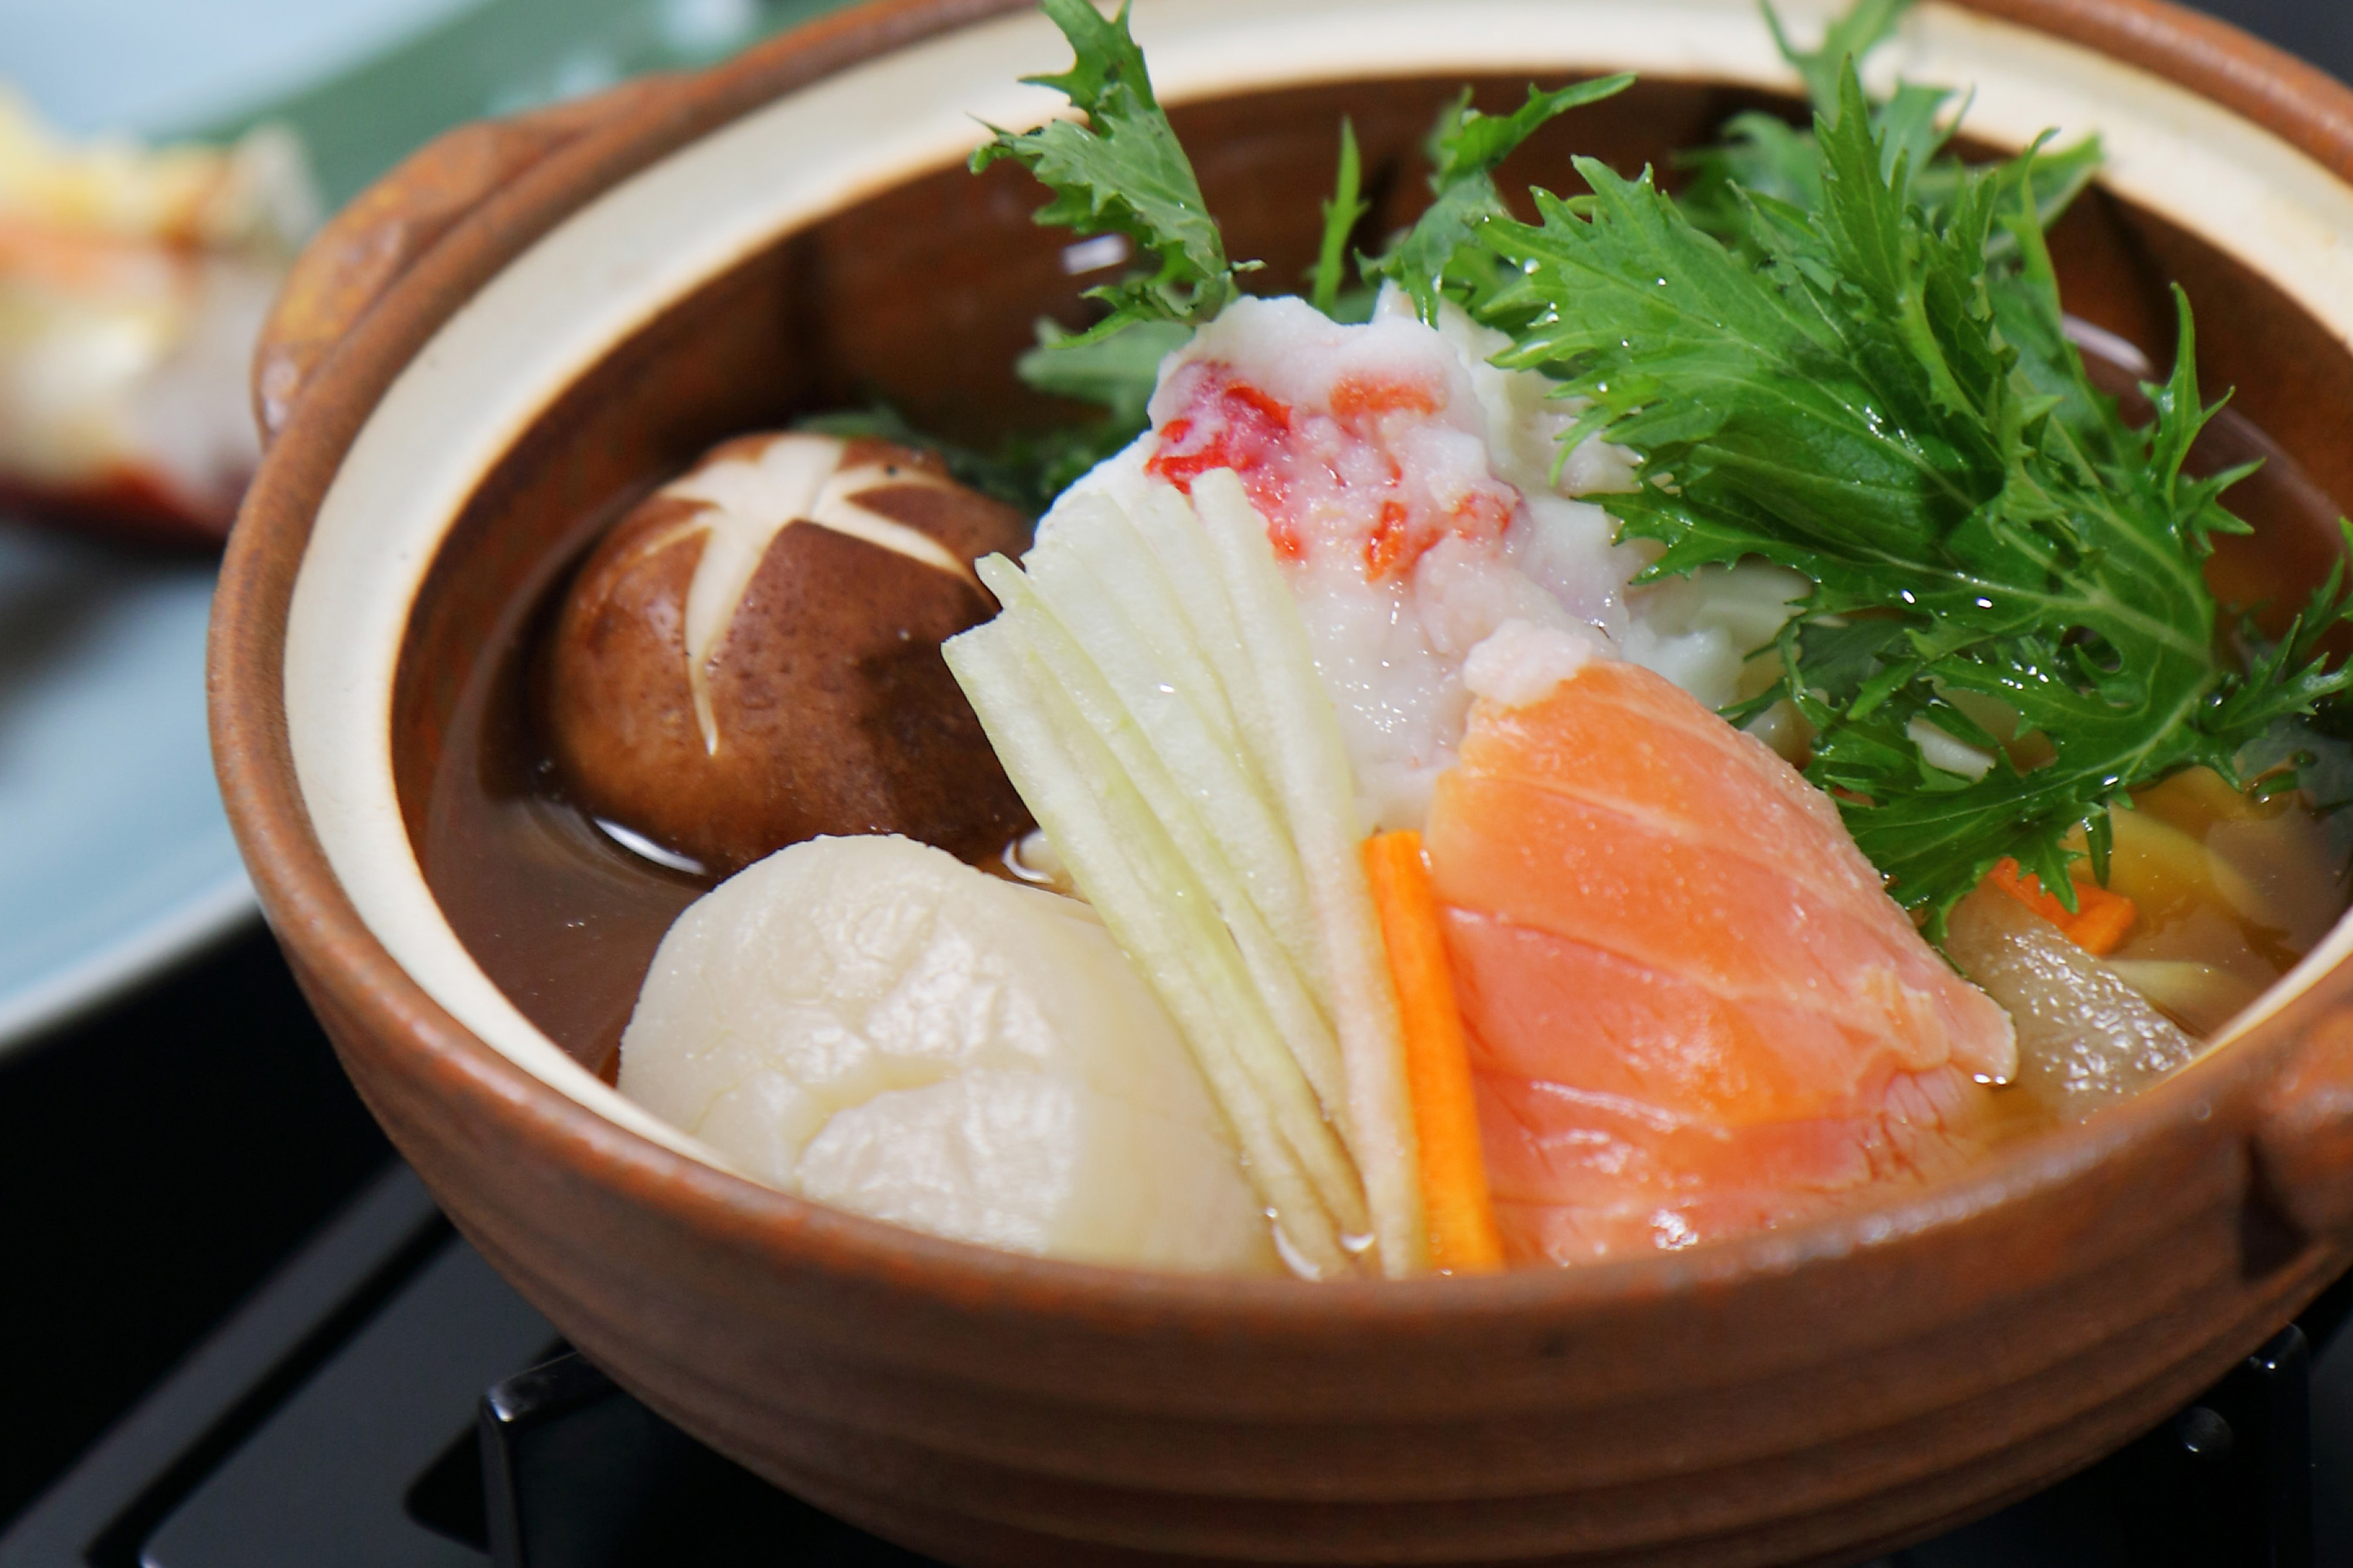 溫物「石狩鍋風小鍋」是一道來自北海道石狩鎮的鄉土料理，主要是將鮭魚與味噌汁結合當地季節蔬菜做出的澎湃料理